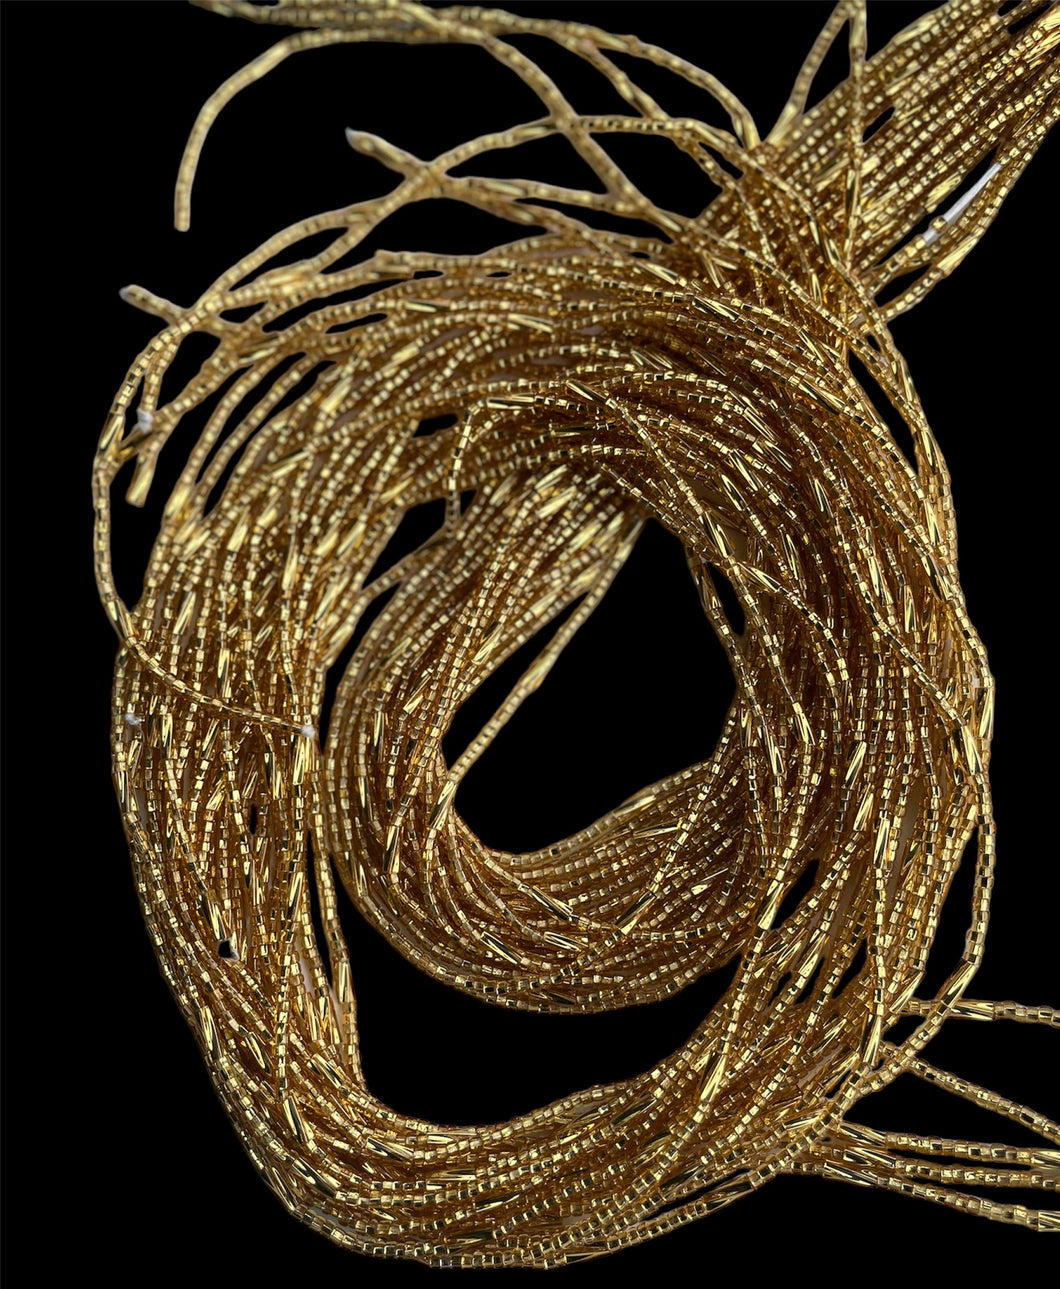 Golden thread waist beads